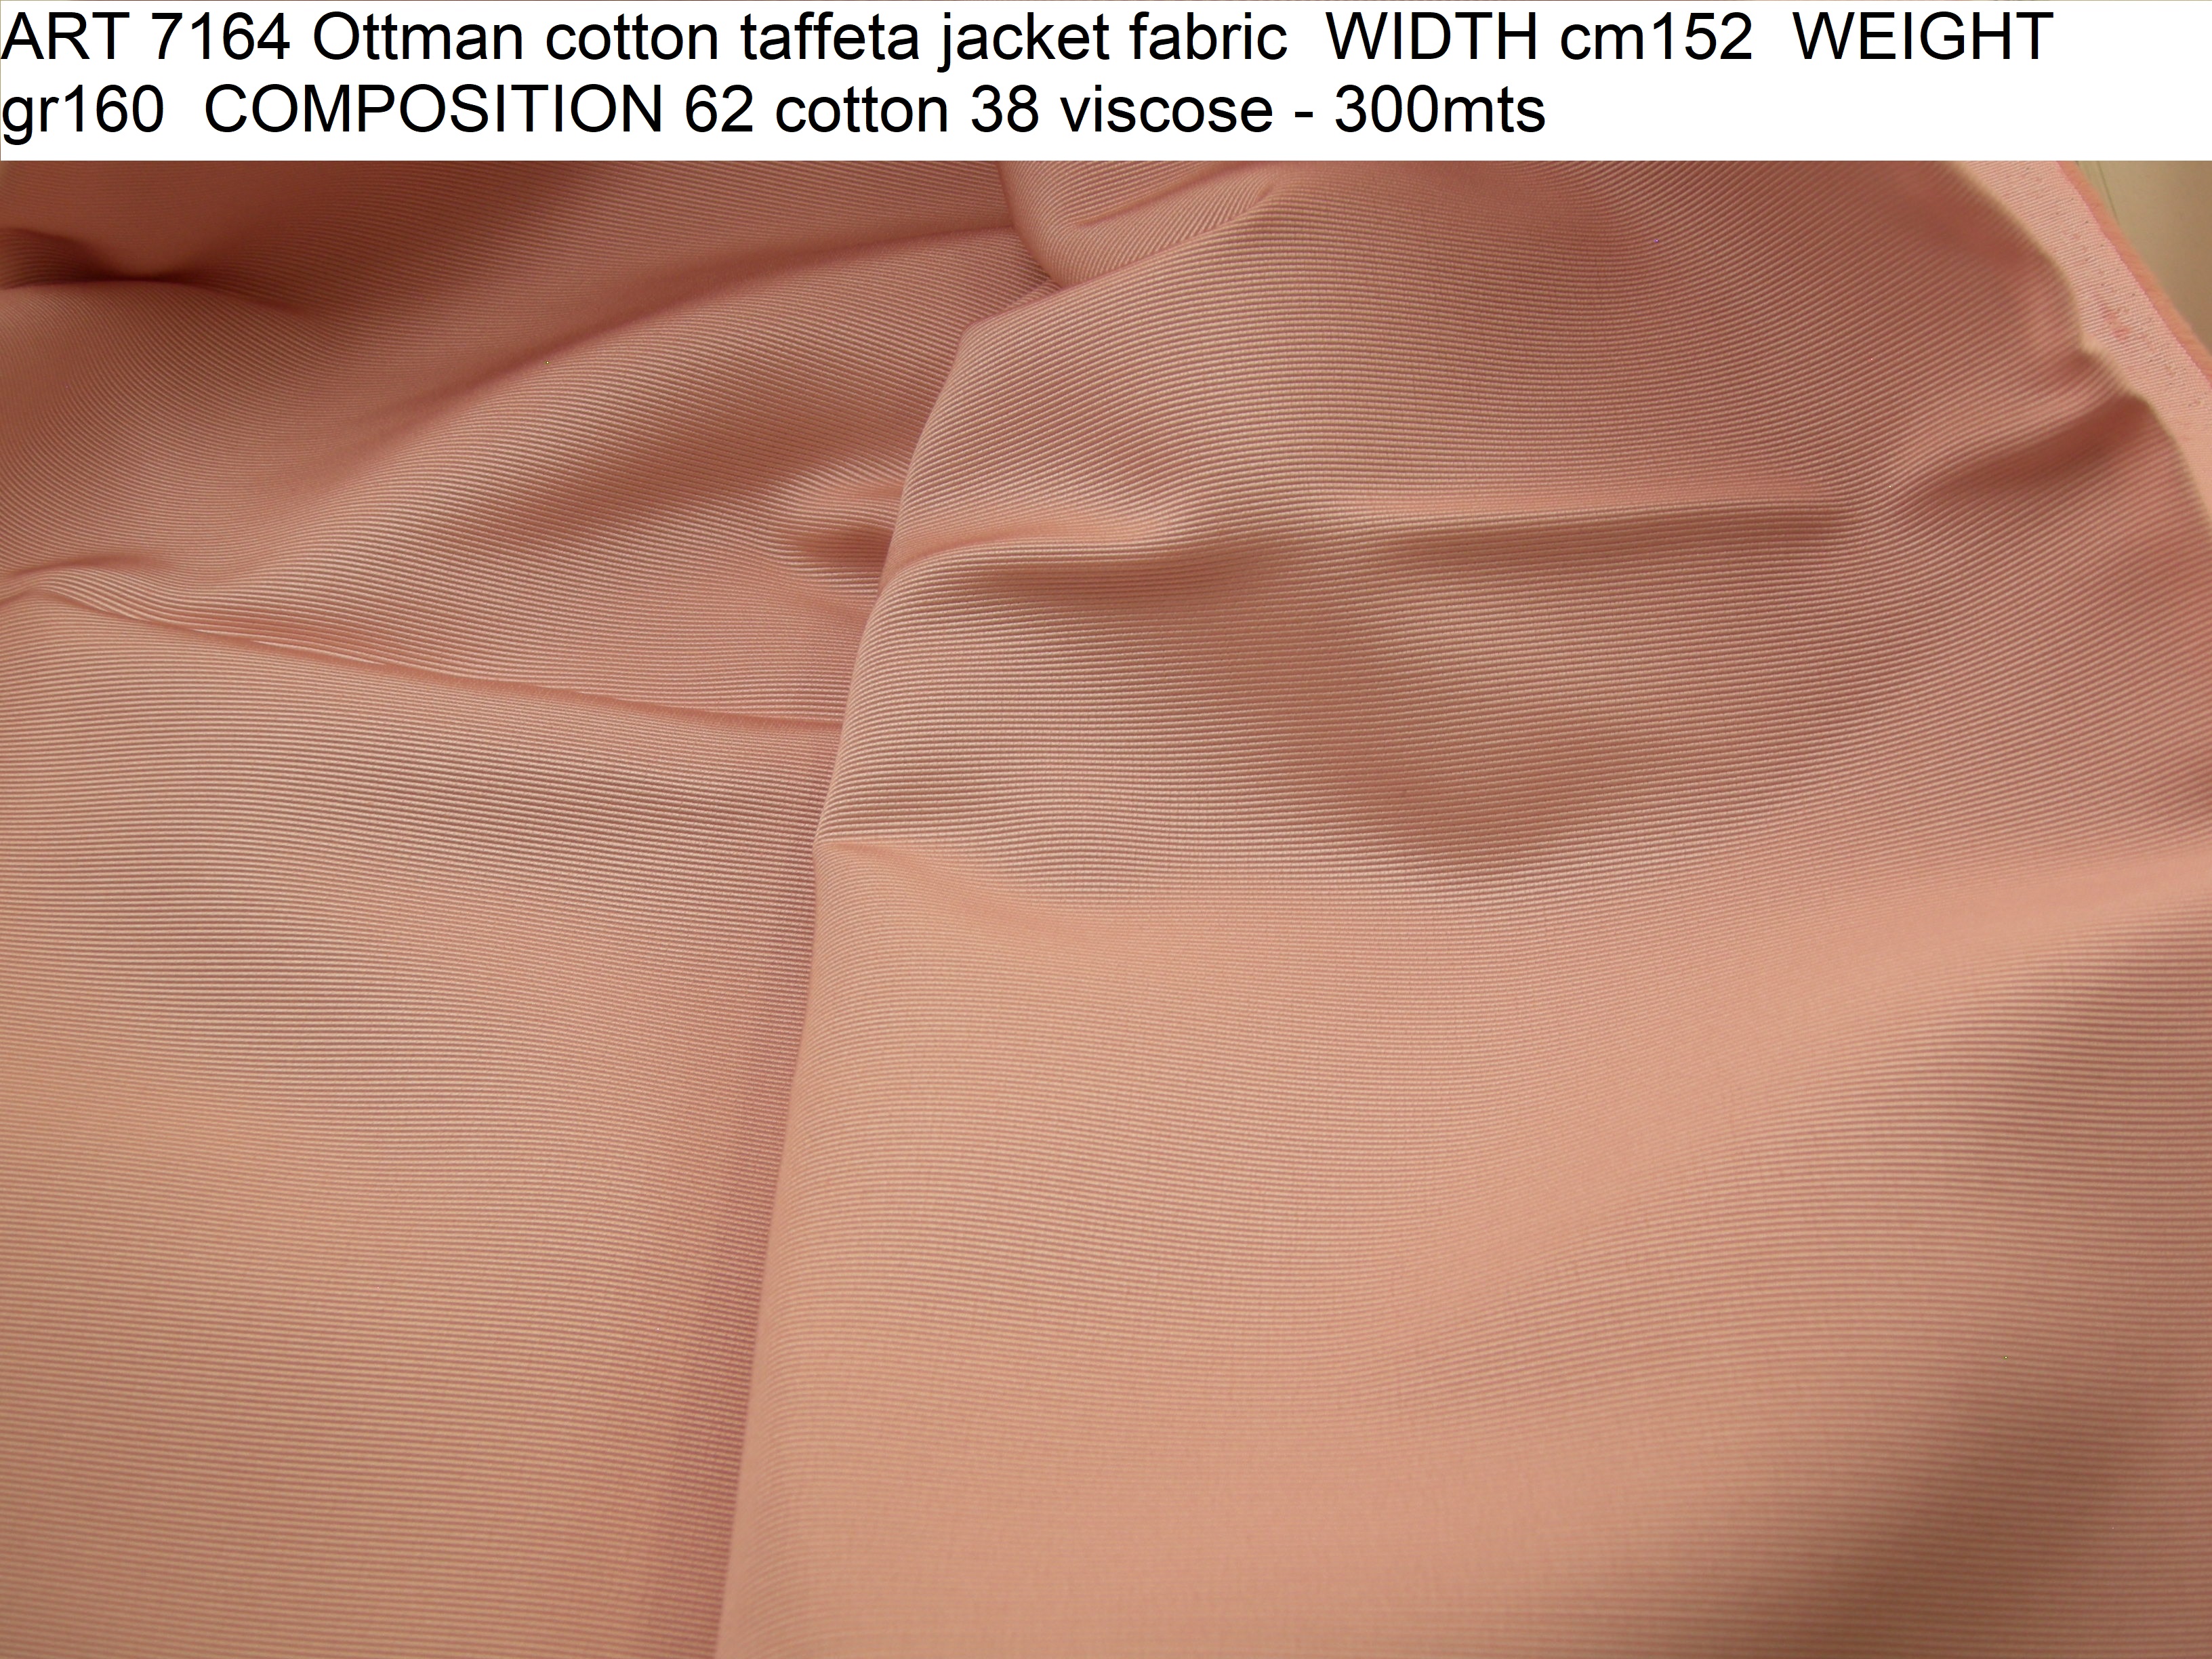 ART 7164 Ottman cotton taffeta jacket fabric WIDTH cm152 WEIGHT gr160 COMPOSITION 62 cotton 38 viscose - 300mts